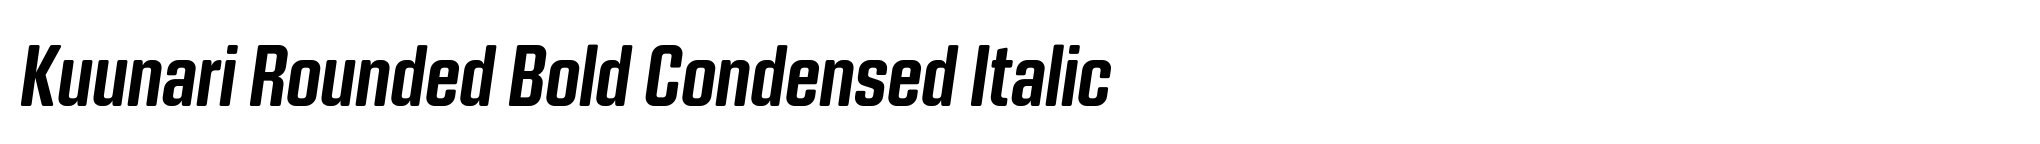 Kuunari Rounded Bold Condensed Italic image